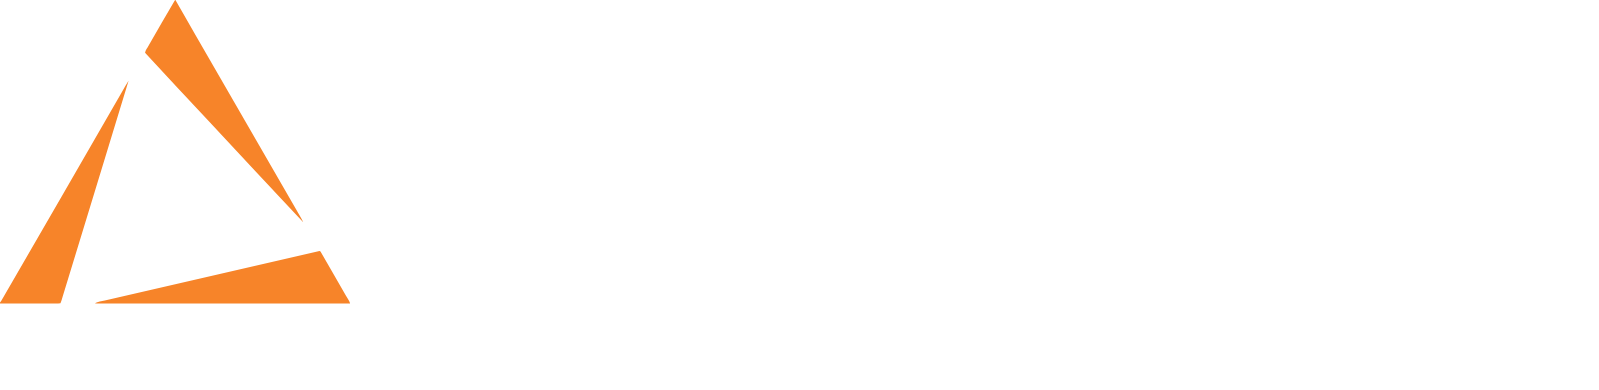 Capstone Infrastructure Logo groß für dunkle Hintergründe (transparentes PNG)